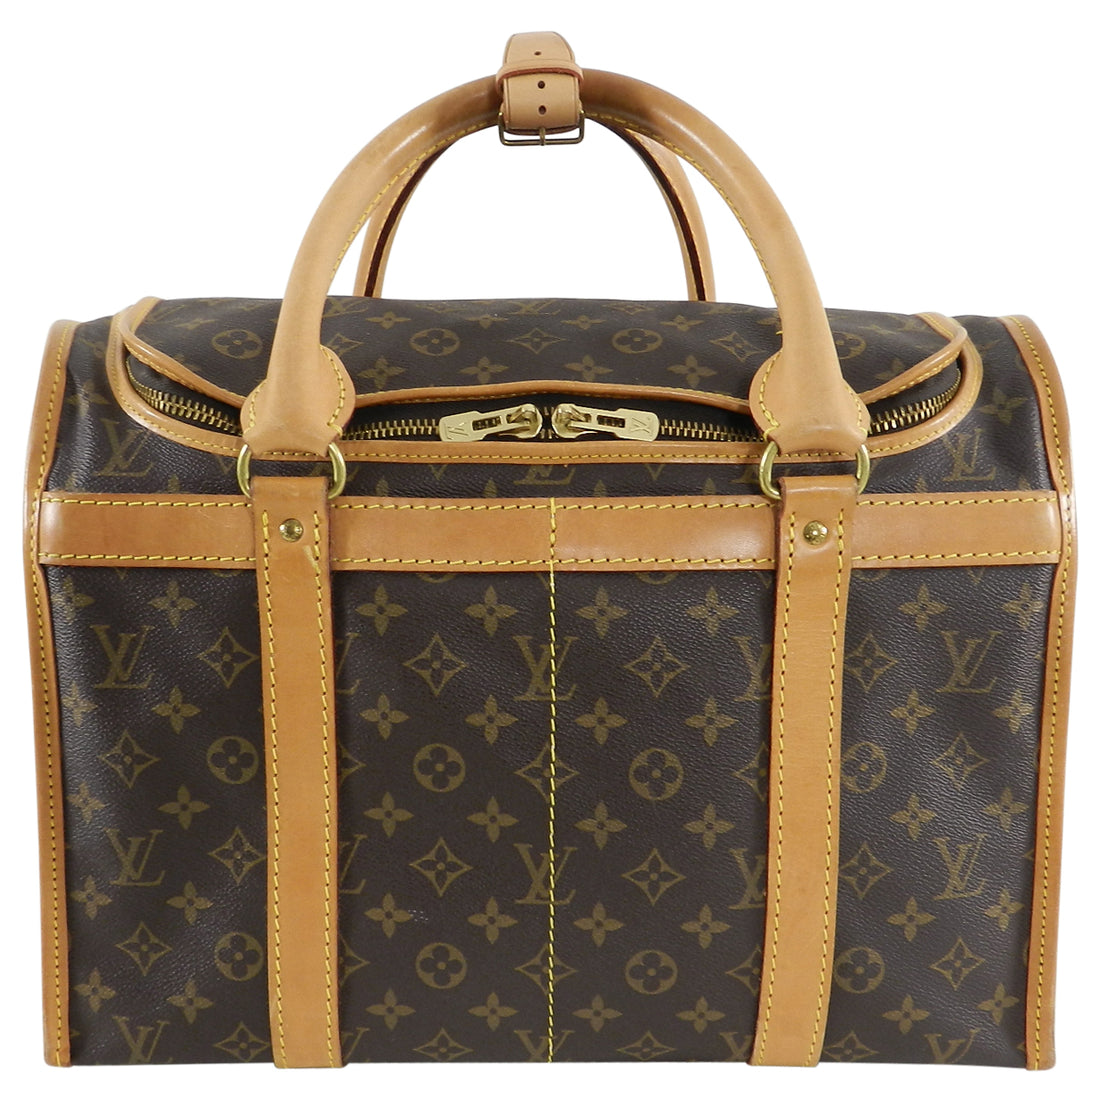 Louis Vuitton Monogram Canvas Sac Chien Train Case Bag